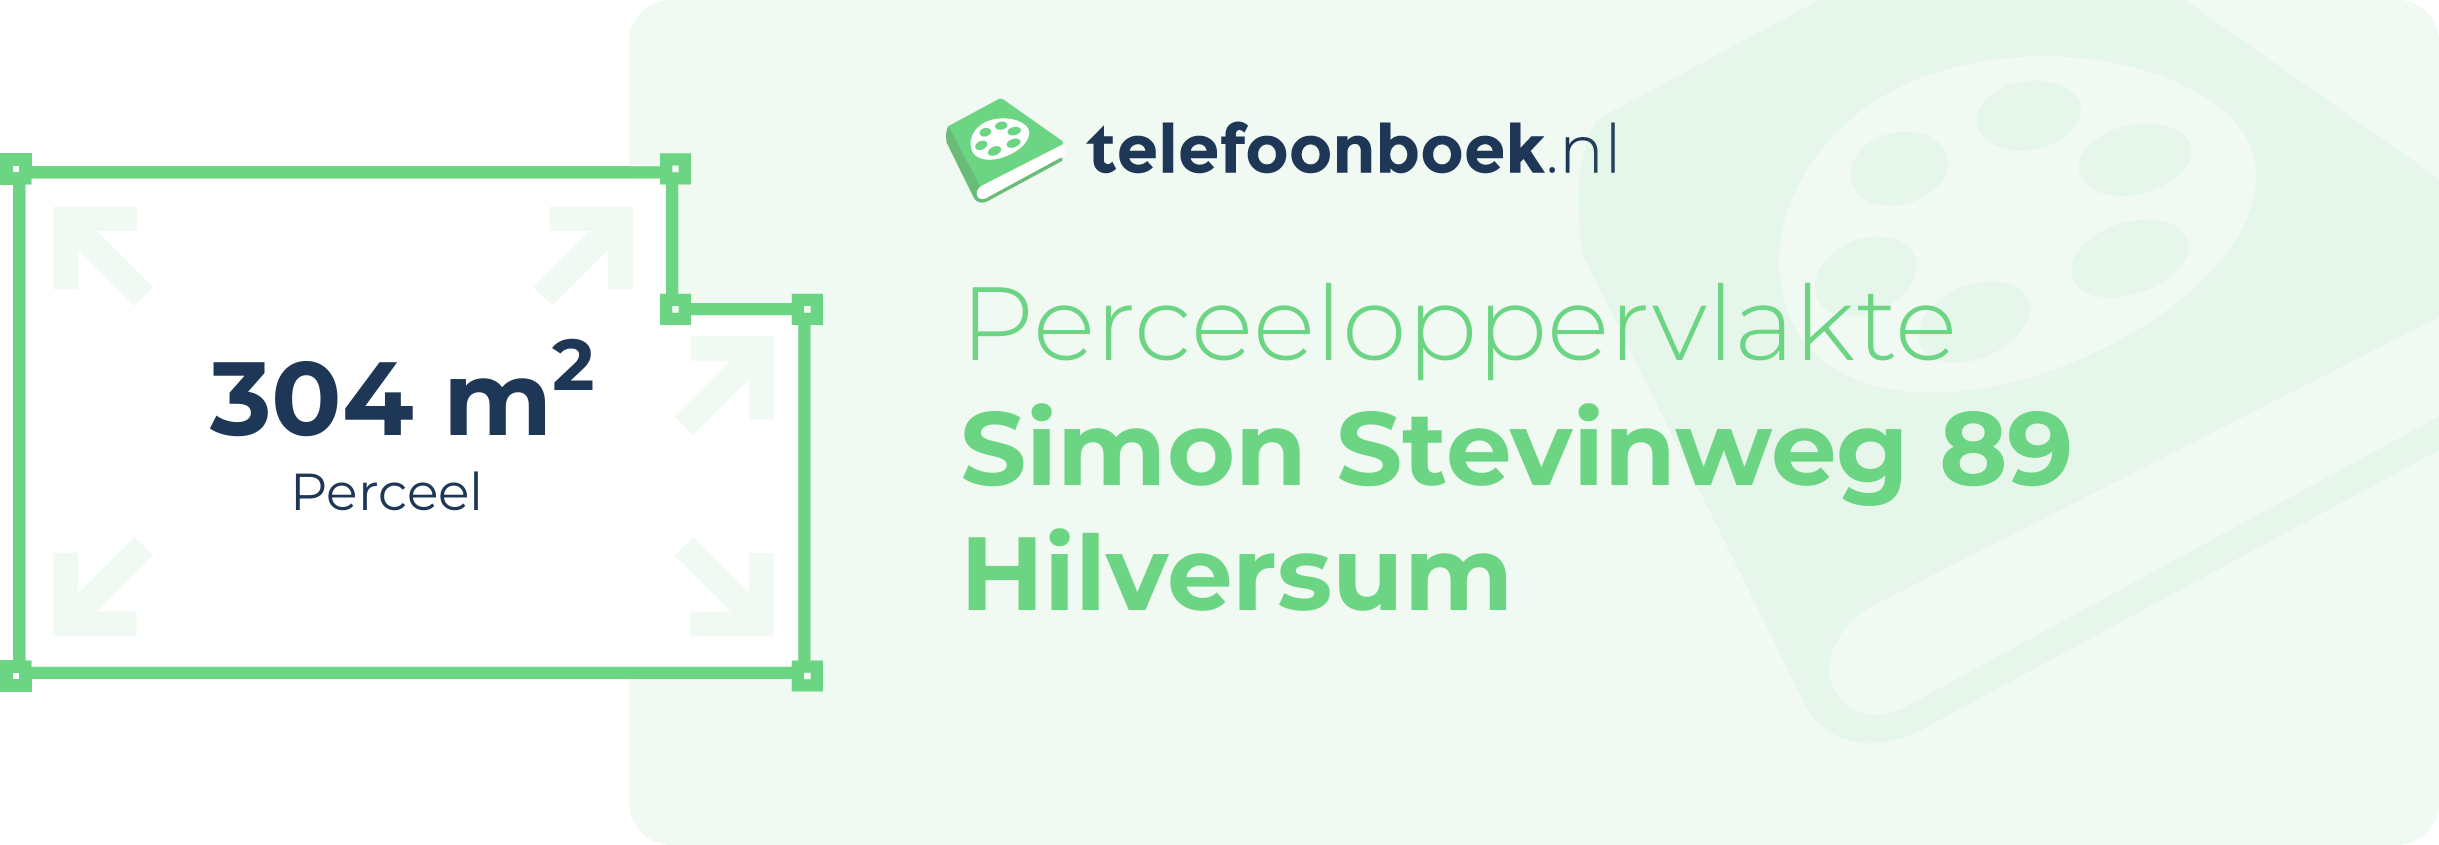 Perceeloppervlakte Simon Stevinweg 89 Hilversum